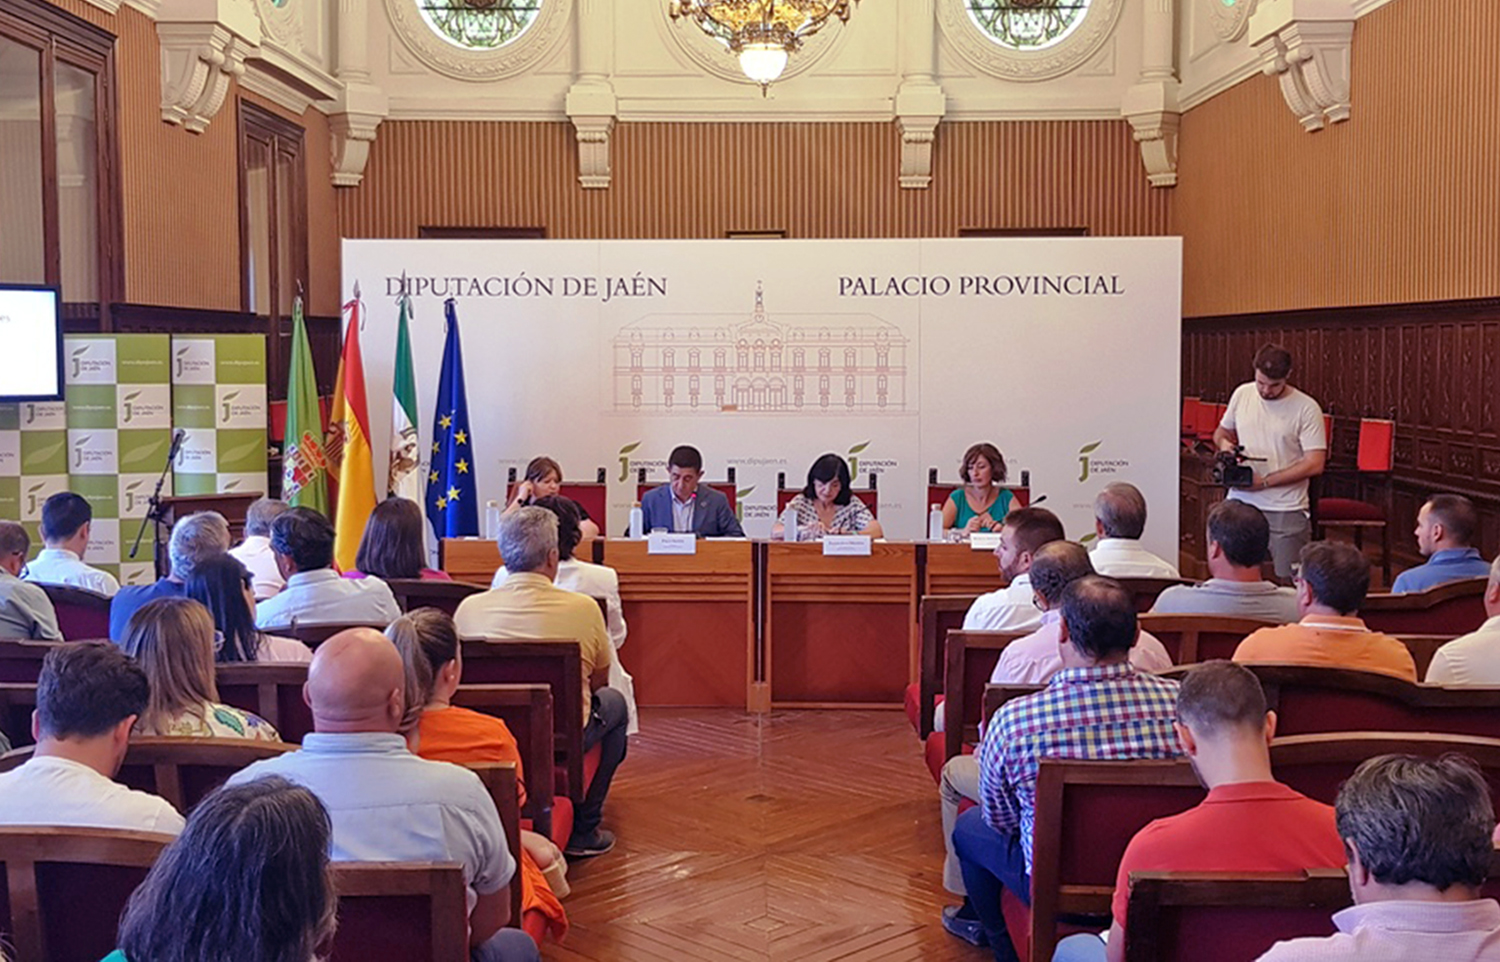 Los ayuntamientos jienenses recibirán 15 millones de euros a través de nuevas iniciativas de empleo impulsadas por la Diputación